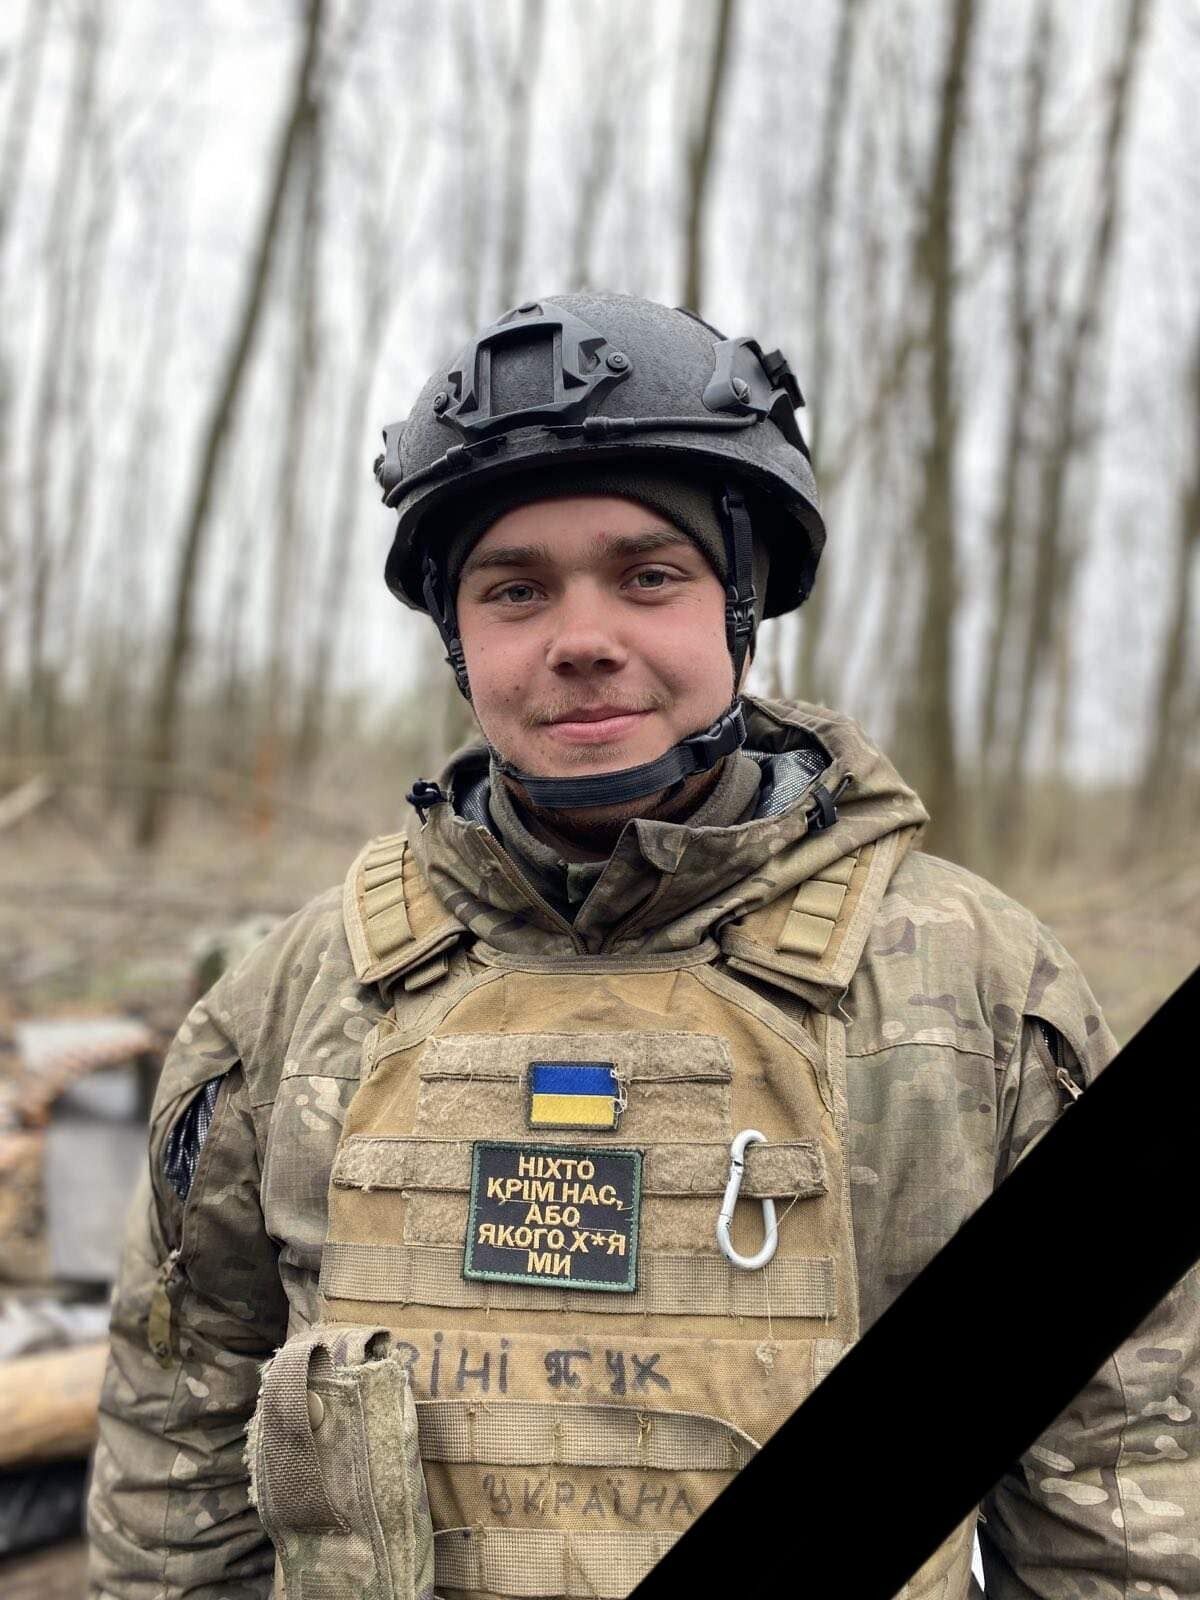 Йому було усього 20 років: на Донбасі загинув молодий воїн із Хмельниччини Олексій Велігоша. Фото